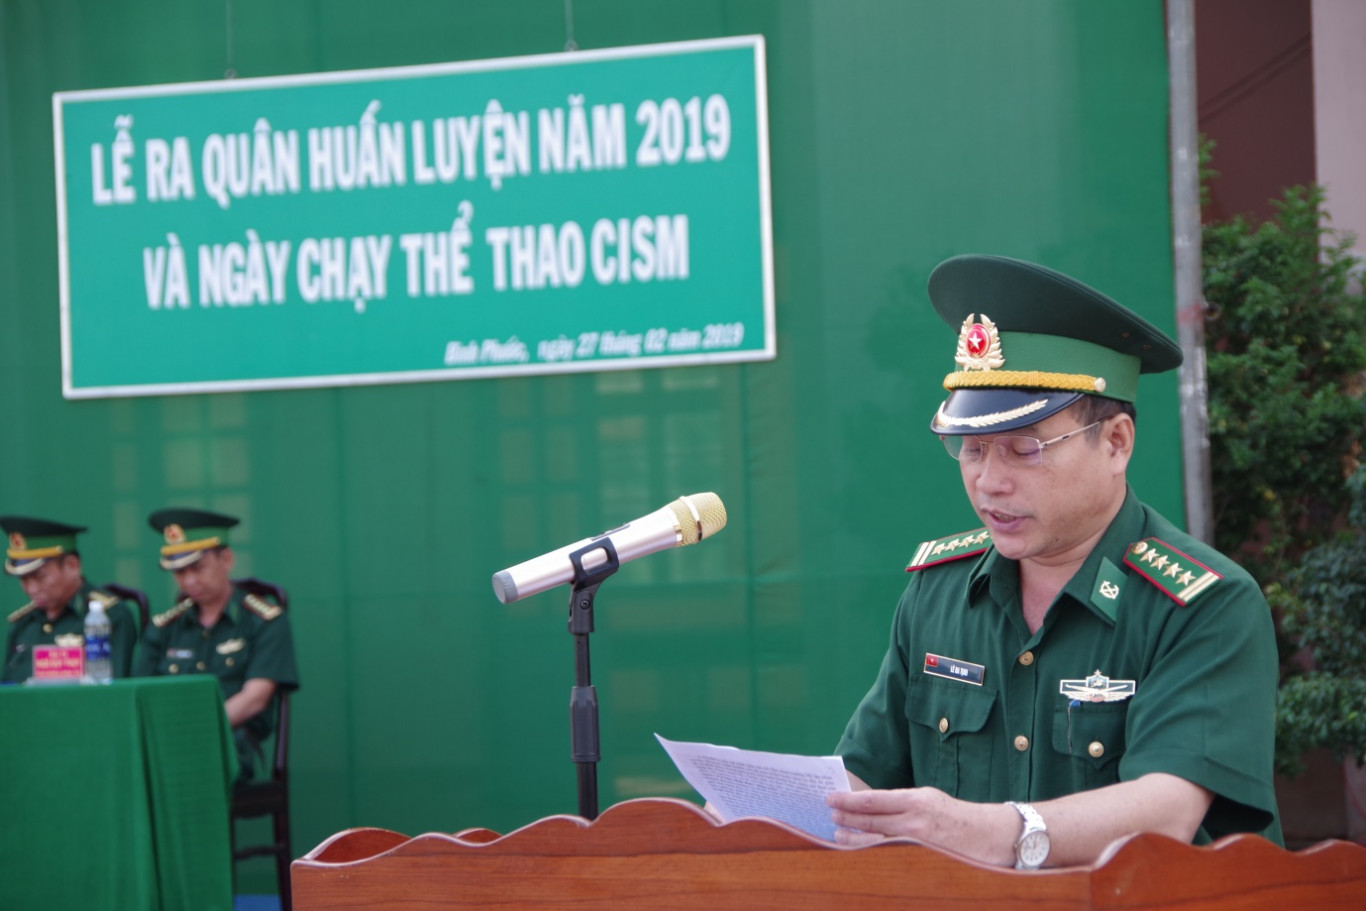 Đại tá Lê Đa Tịnh, Phó chỉ huy trưởng tham mưu tác chiến BĐBP  tỉnh quán triệt nhiệm vụ huấn luyện năm 2019